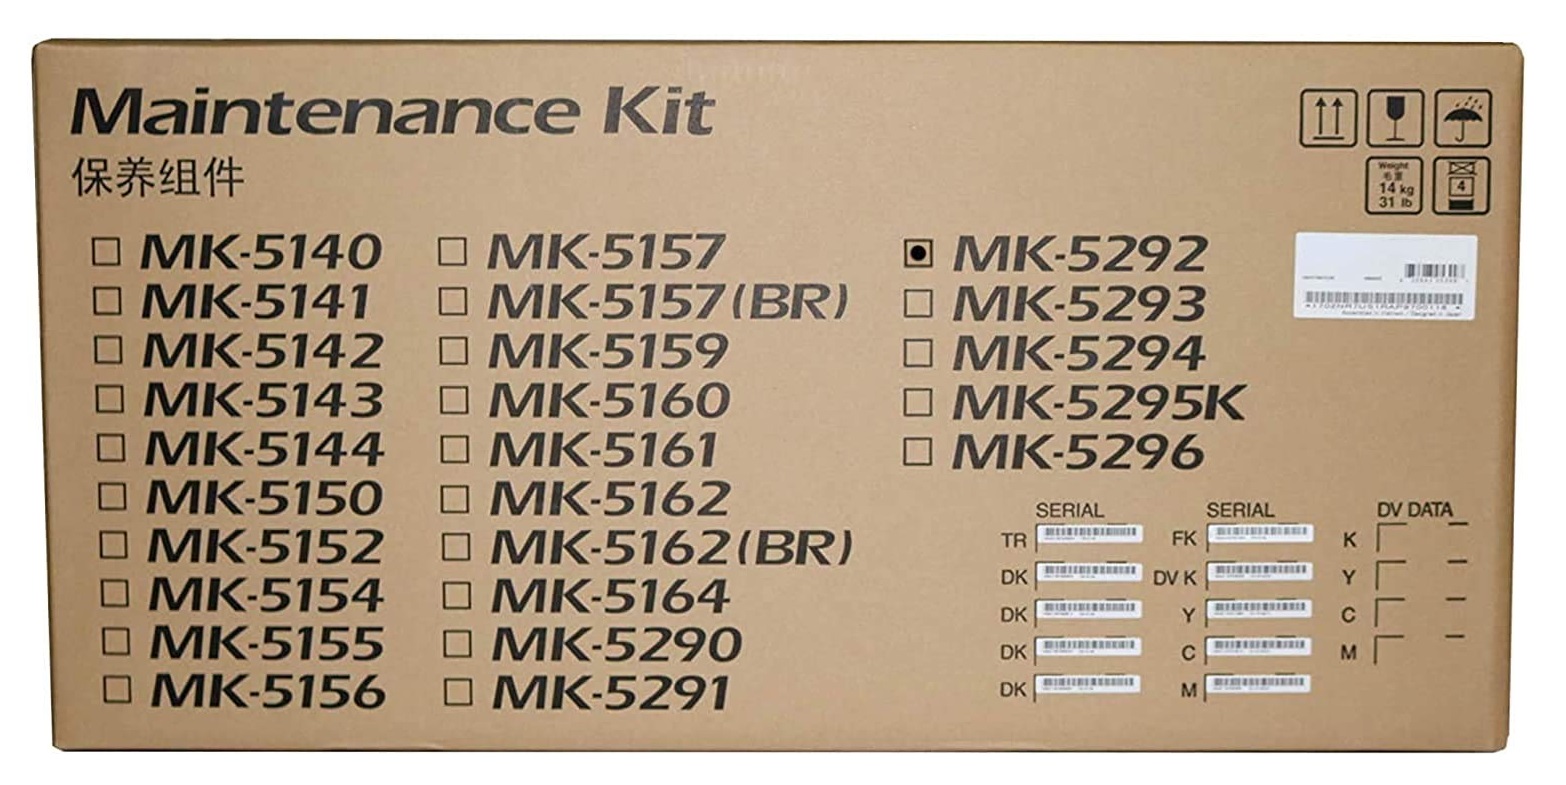 Kit de Mantenimiento Kyocera MK-5292 / 300k | 2311 / 1702TX7US0 - Original Kit de Mantenimiento Kyocera MK-5292. Incluye: Unidad de Cilindro, Unidad de Revelado, Unidad Fusora, Unidad Transferencia. FS-P7240cdn 1702TX7US1 